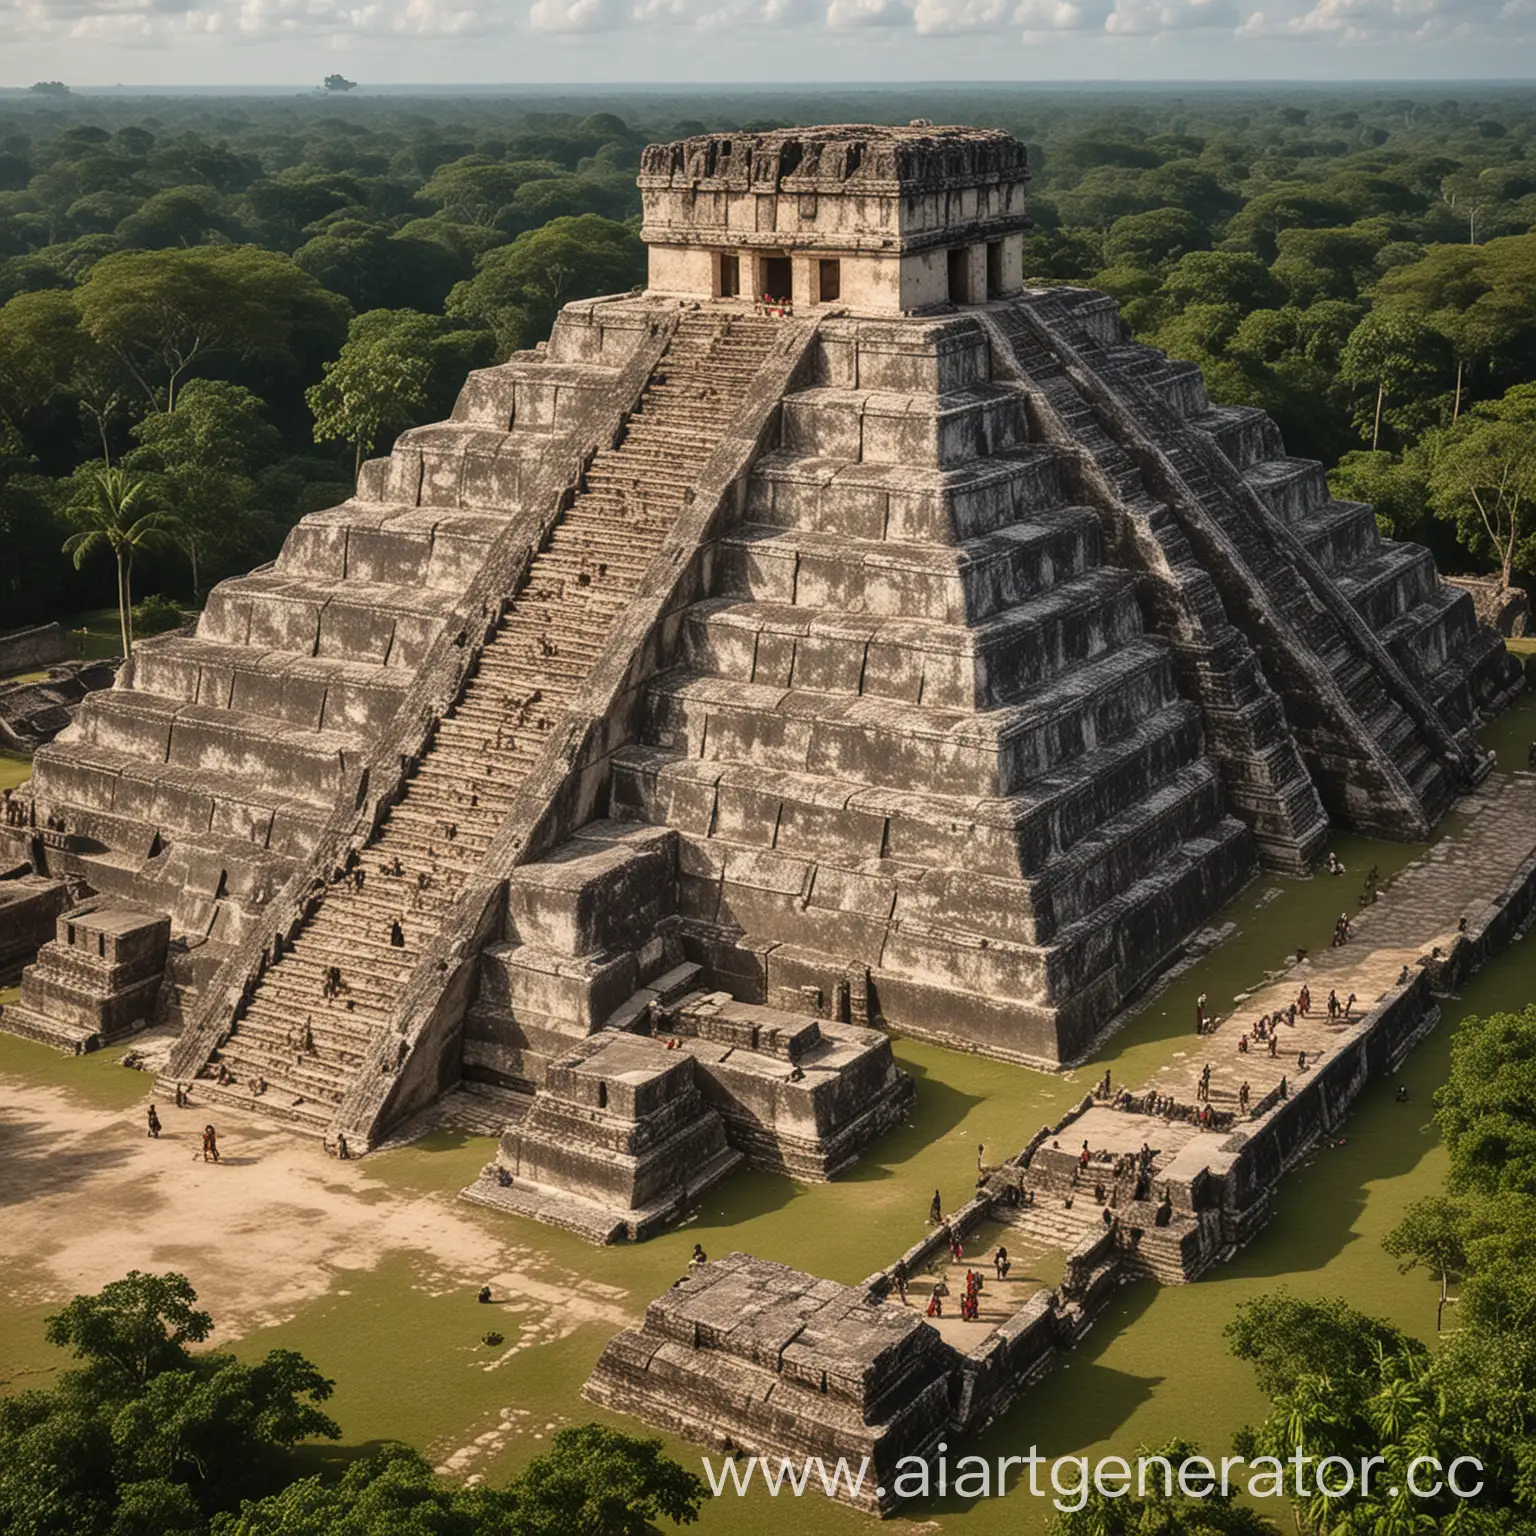 Mayan-Civilization-Ruins-in-Dense-Jungle-Setting